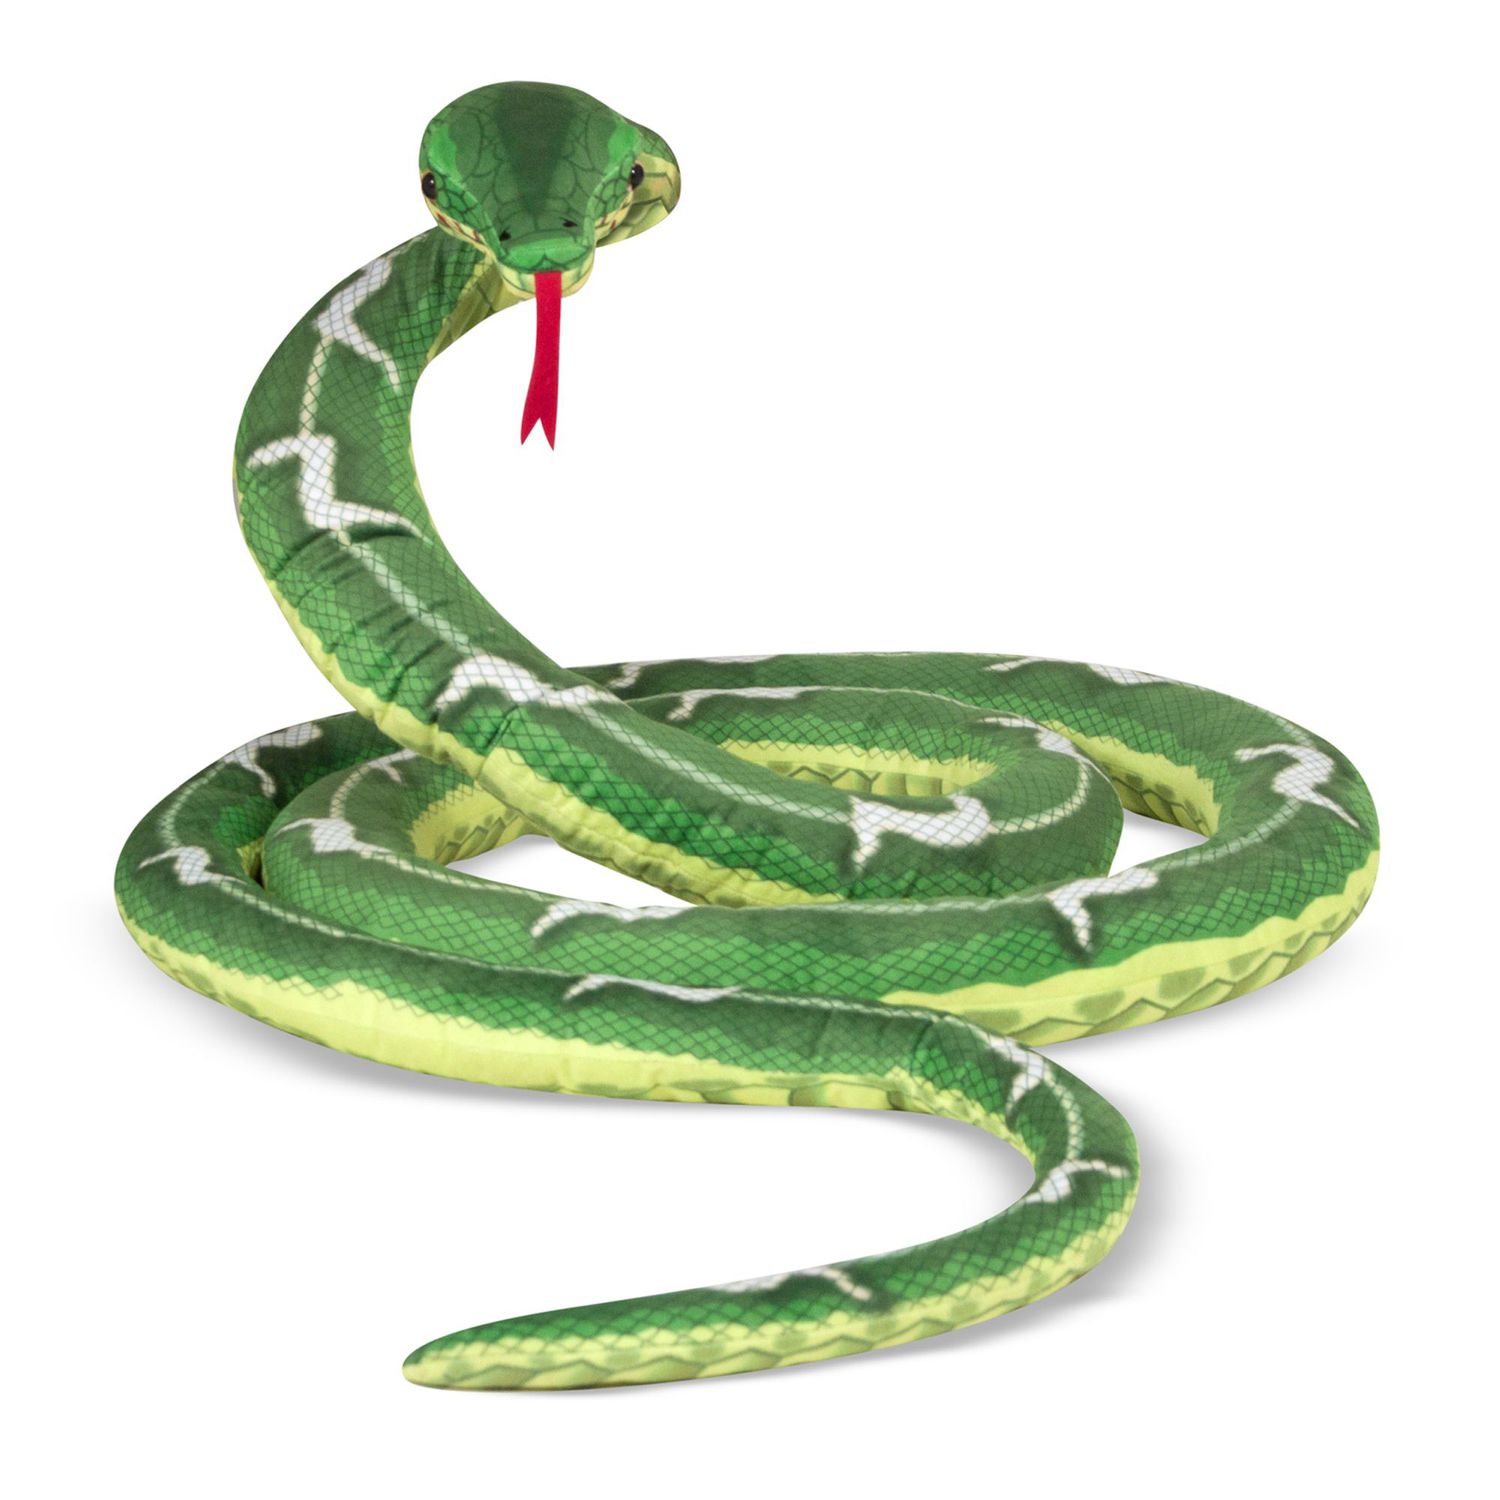 snake cuddly toy